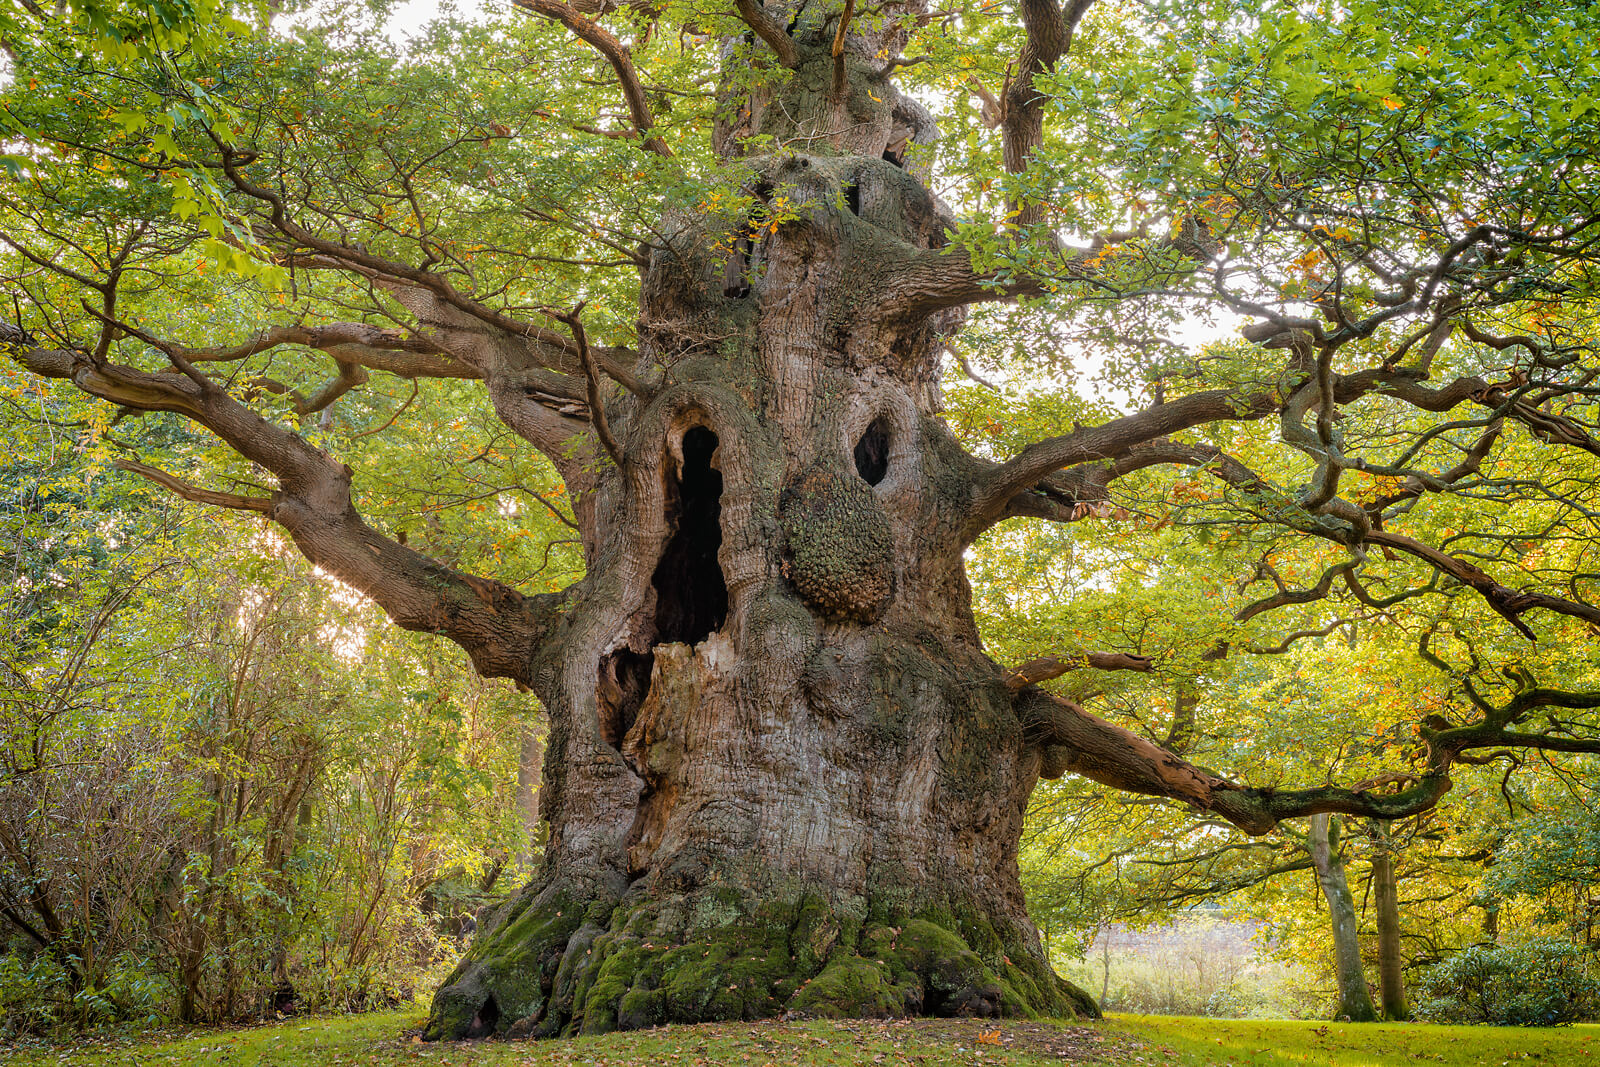 The Majesty Oak